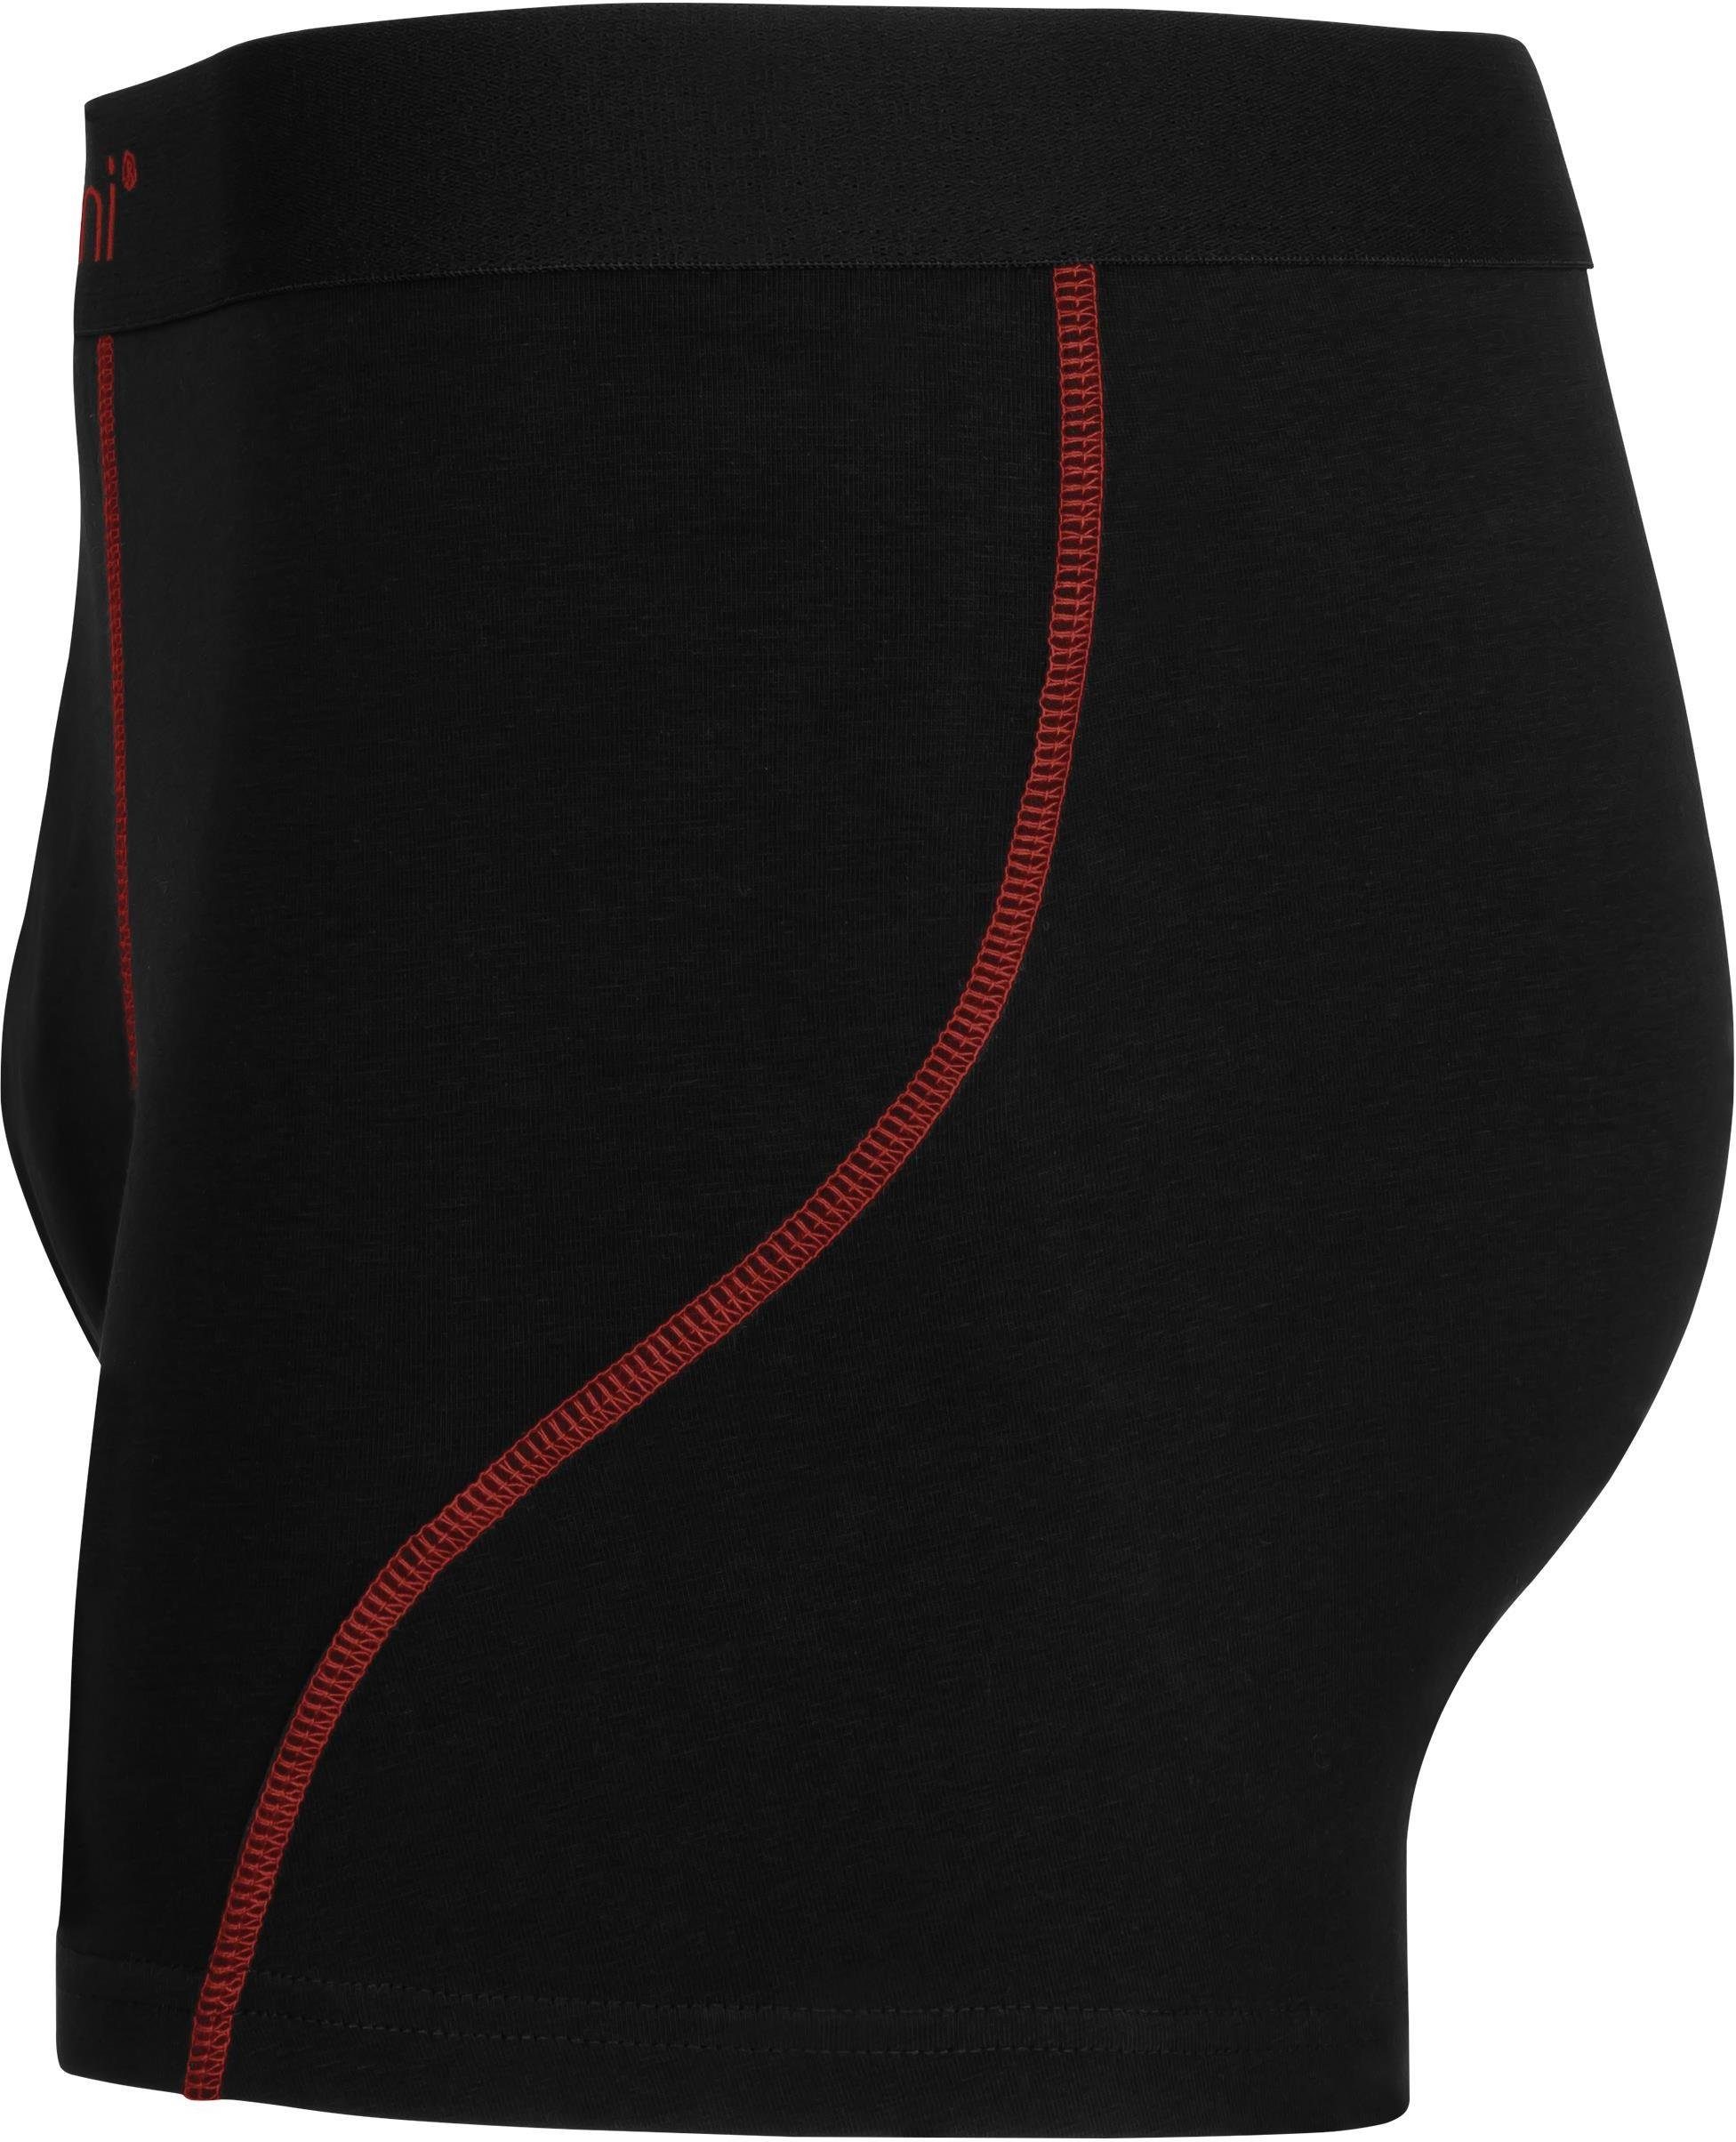 Baumwolle Baumwoll-Boxershorts Rot Herren Unterhose aus atmungsaktiver 12 für x Boxershorts normani Männer